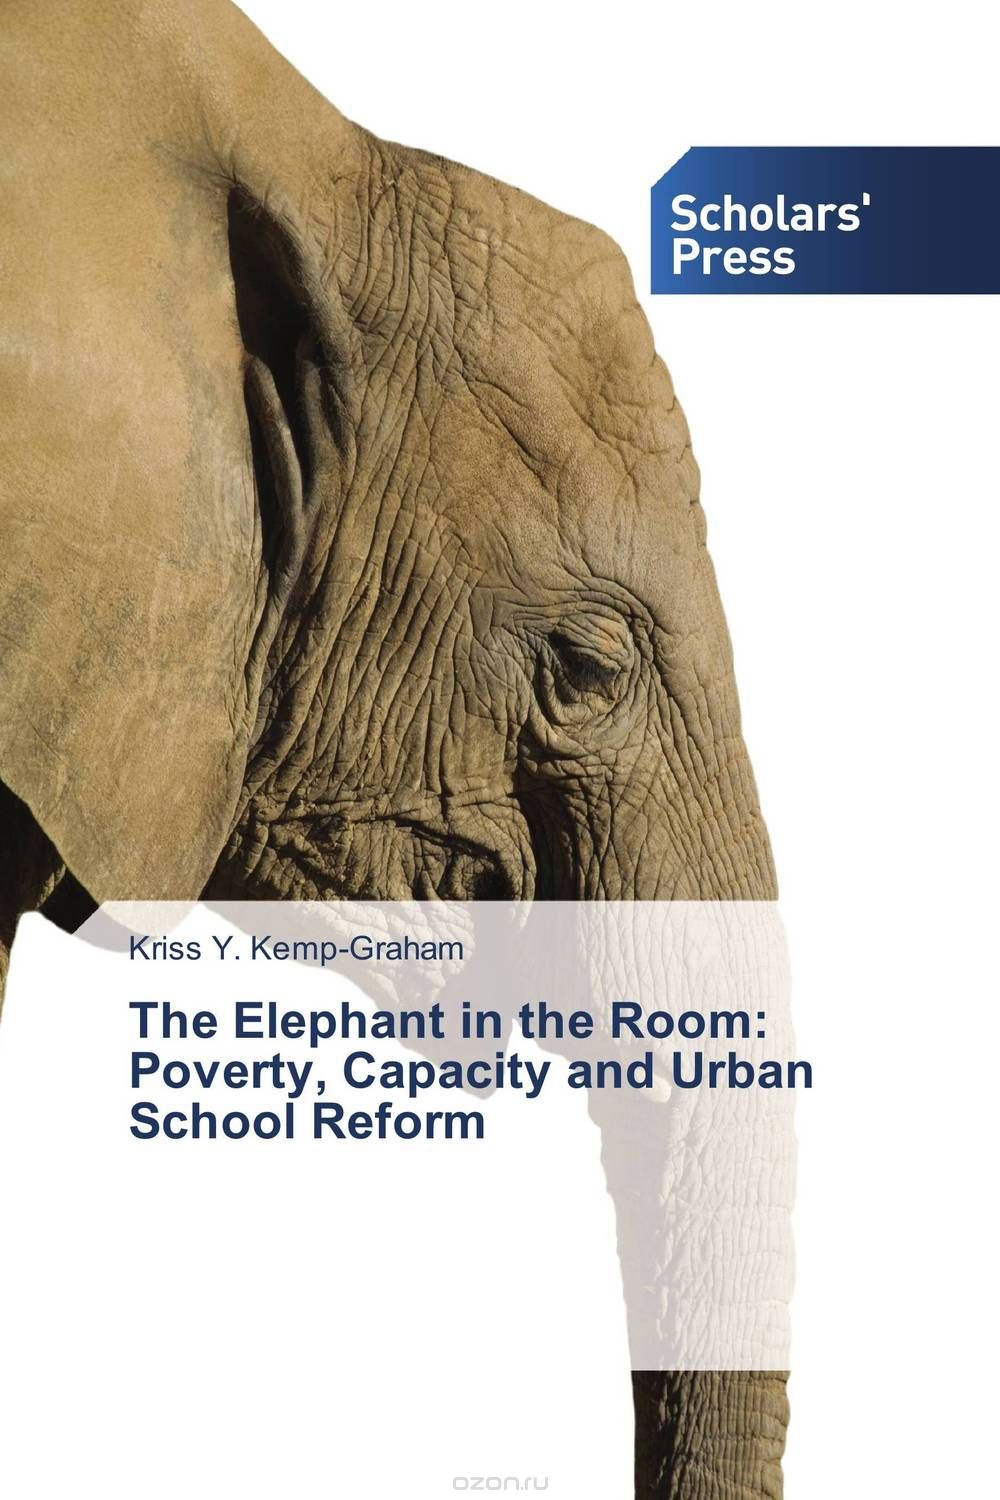 Скачать книгу "The Elephant in the Room:  Poverty, Capacity and Urban School Reform"